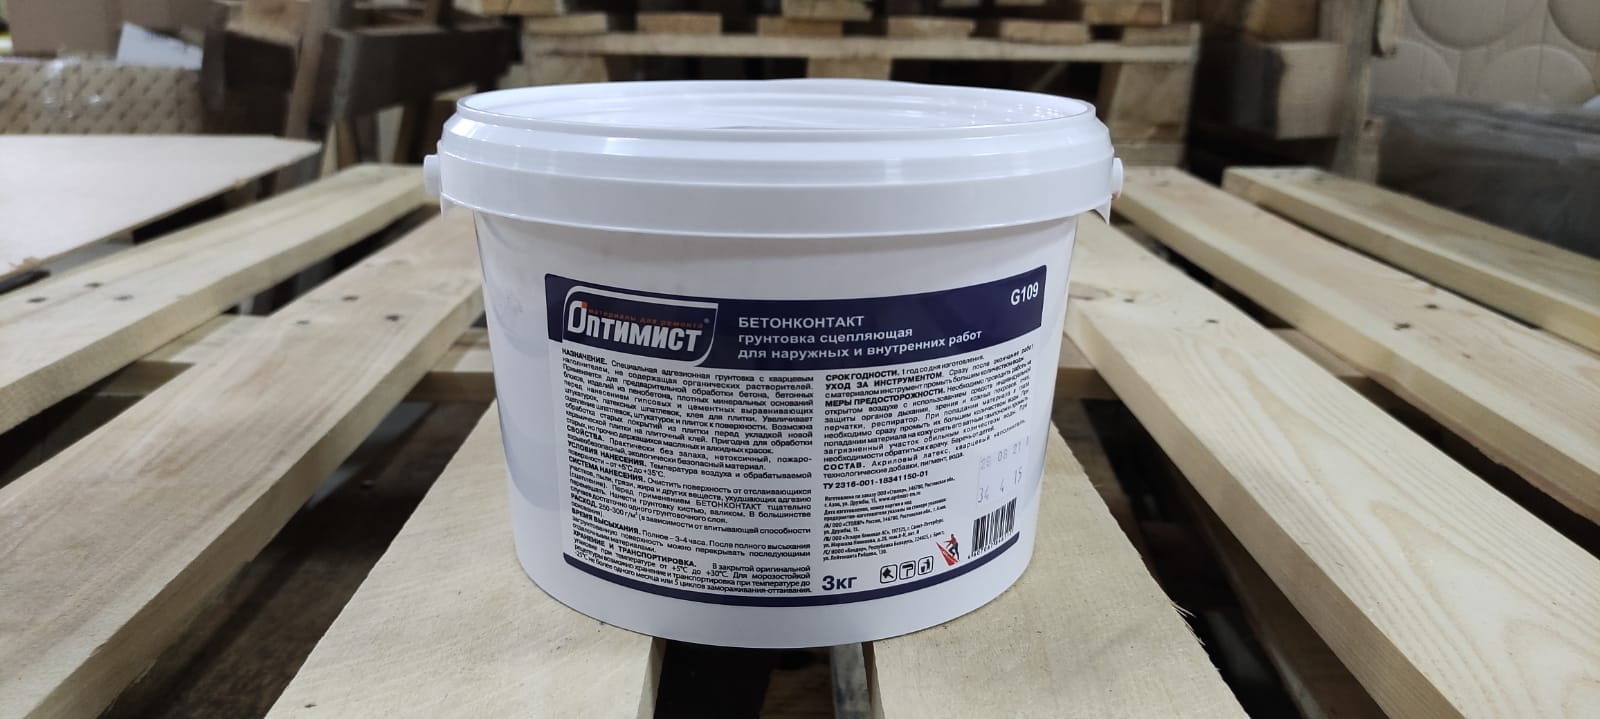 Грунтовка бетонконтакт (бетоноконтакт) для стен и пола морозостойкая 3 кг ОПТИМИСТ G 109